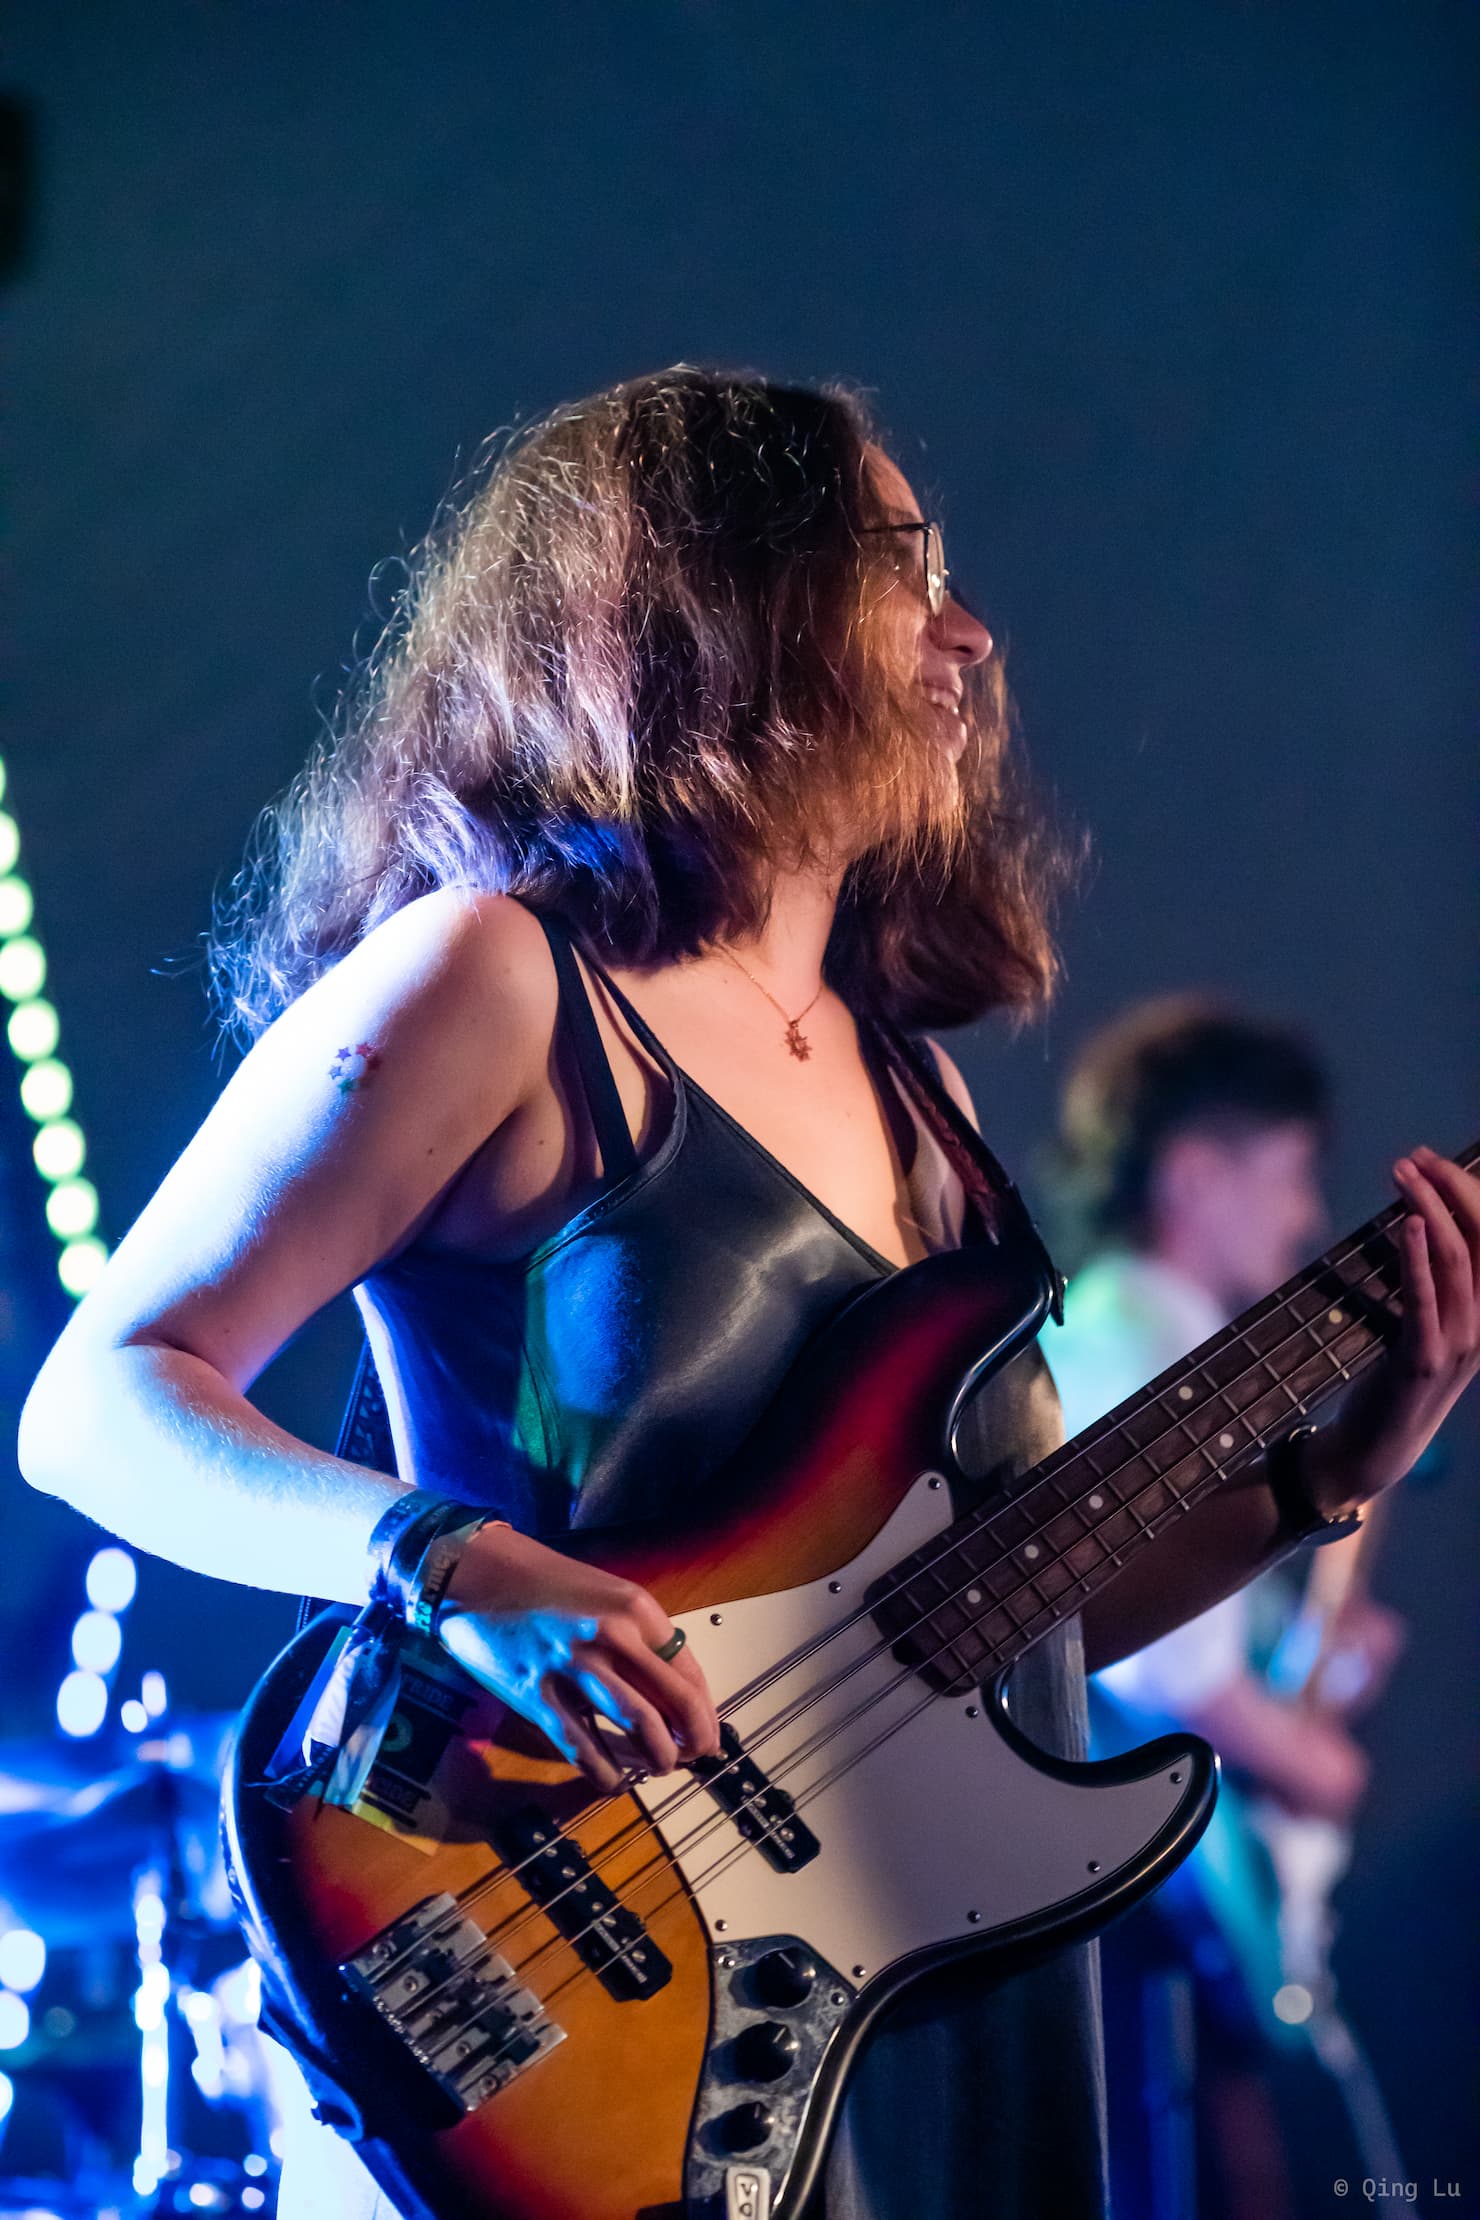 Anna-Maria playing bass at a Cambridge May Ball